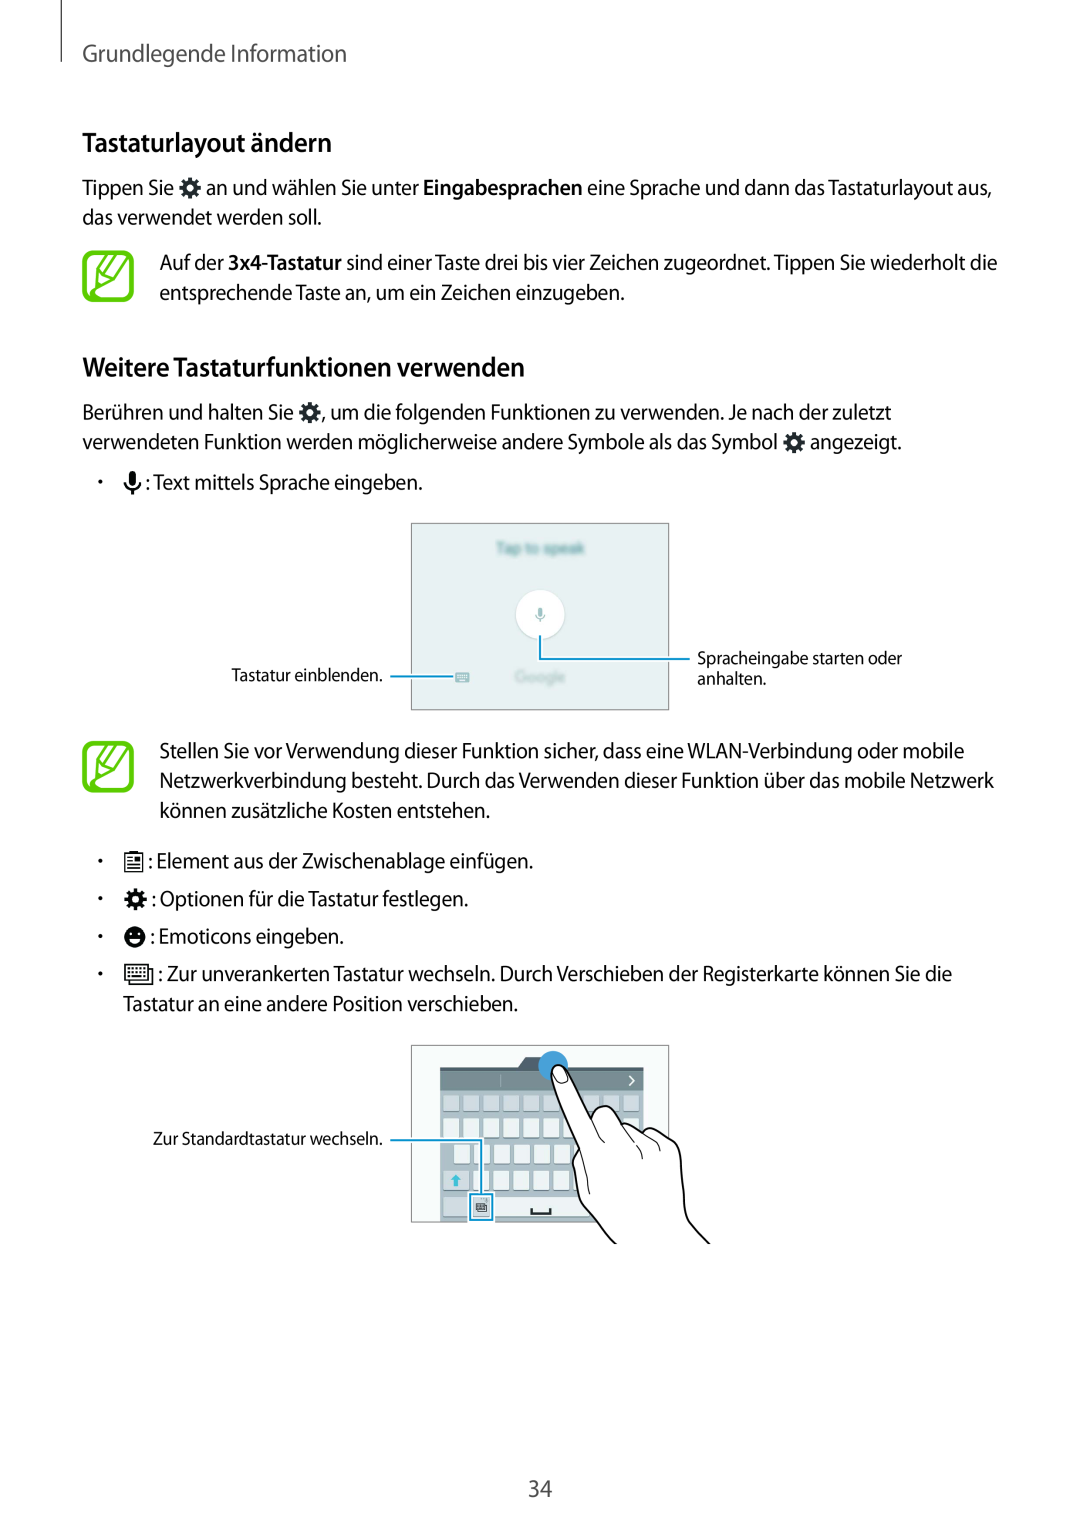 Samsung SM-G901FZKACOS manual Tastaturlayout ändern, Weitere Tastaturfunktionen verwenden, Grundlegende Information 